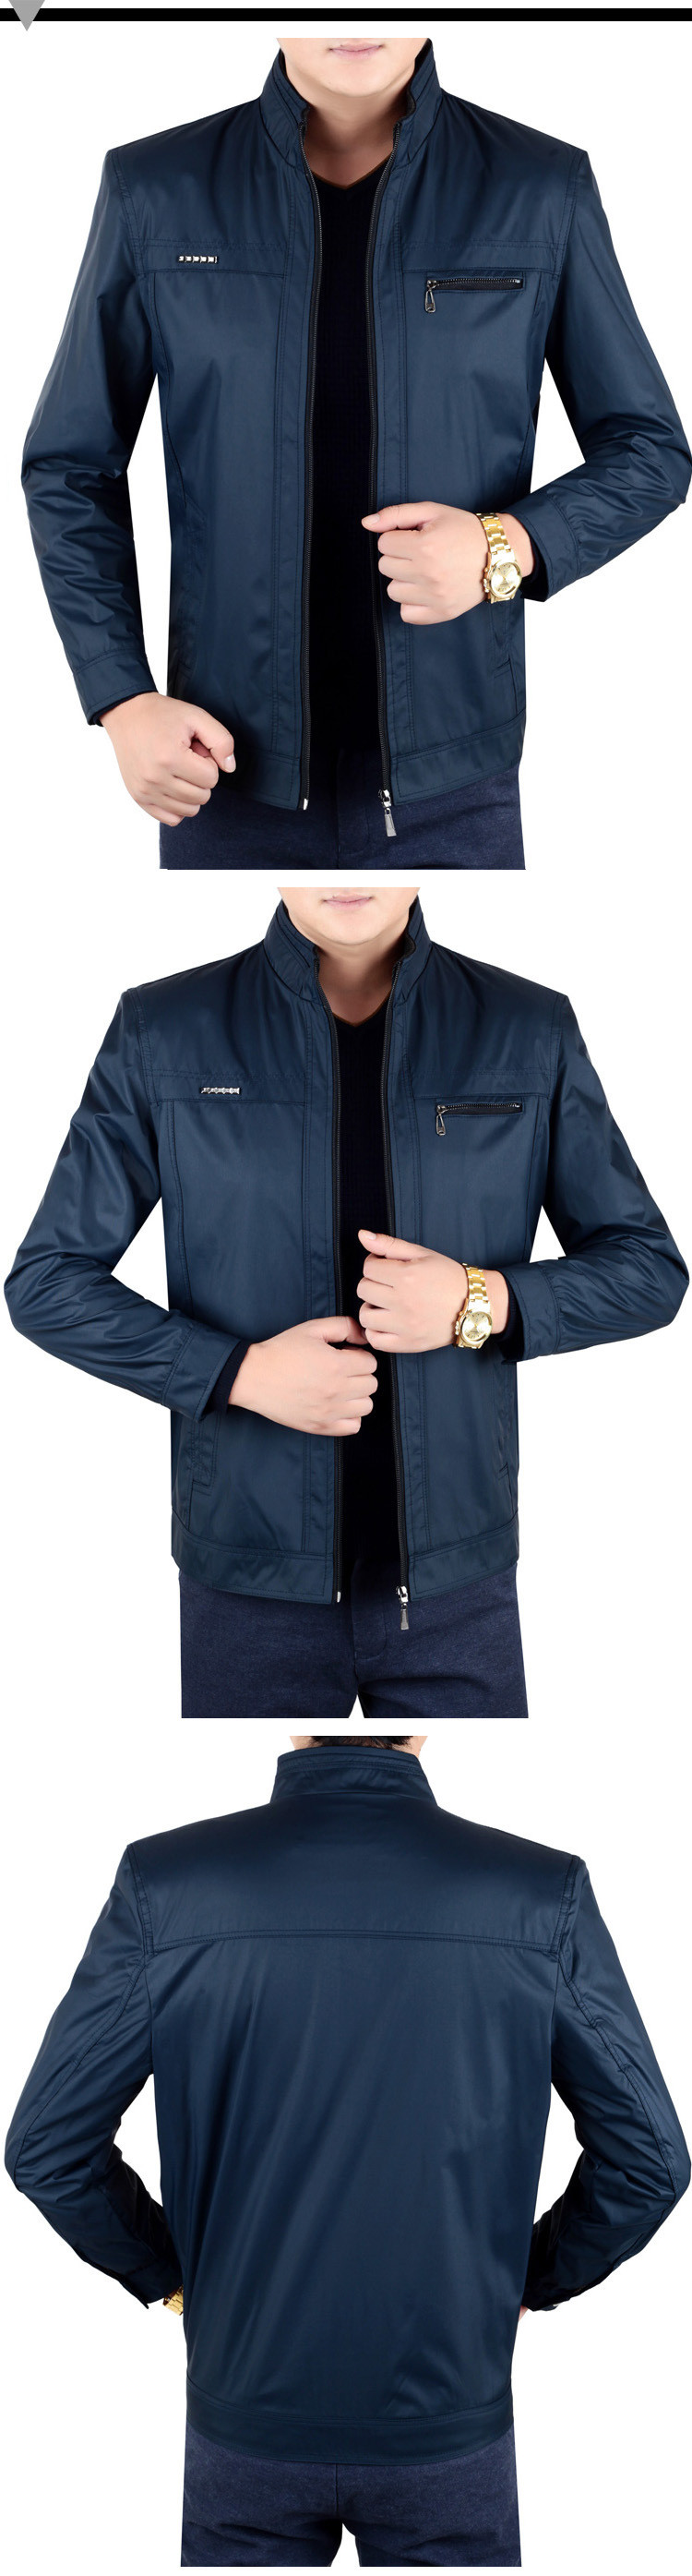 新款中年男式夹克休闲外套商务男装薄款纯色立领男夹克衫